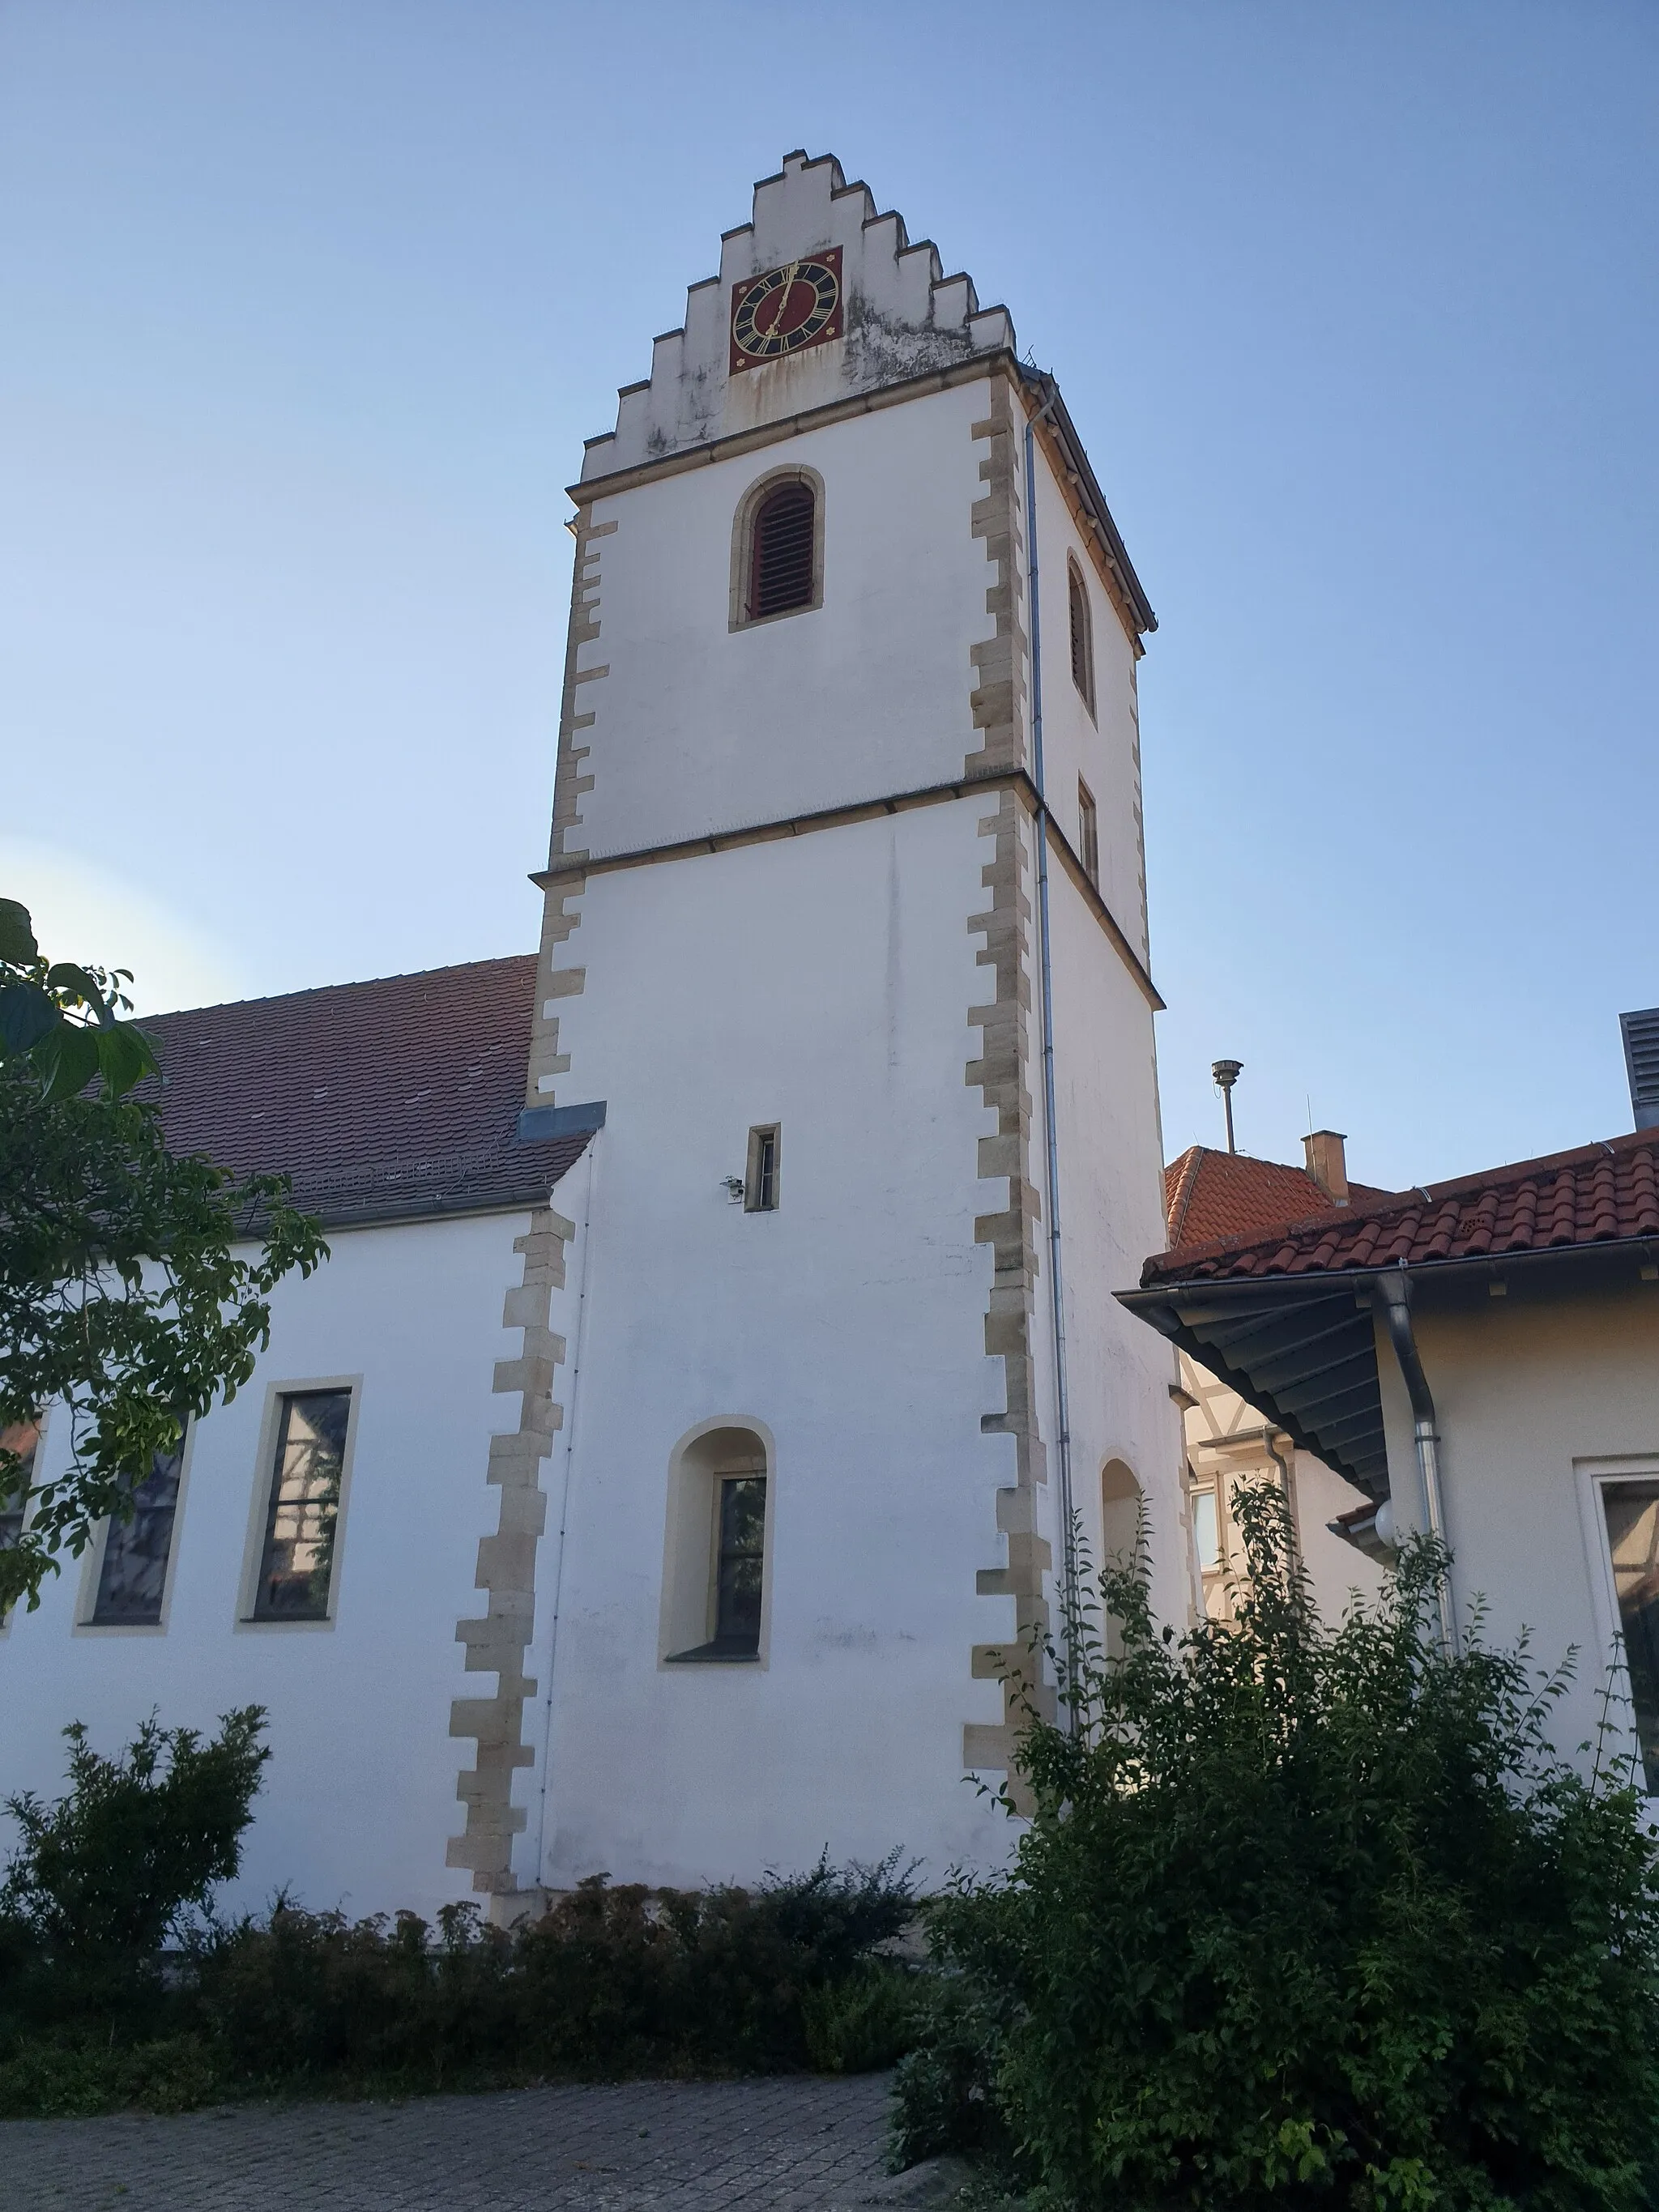 Photo showing: Turm der evangelischen Kirche in Jettenburg, alter Burgrest